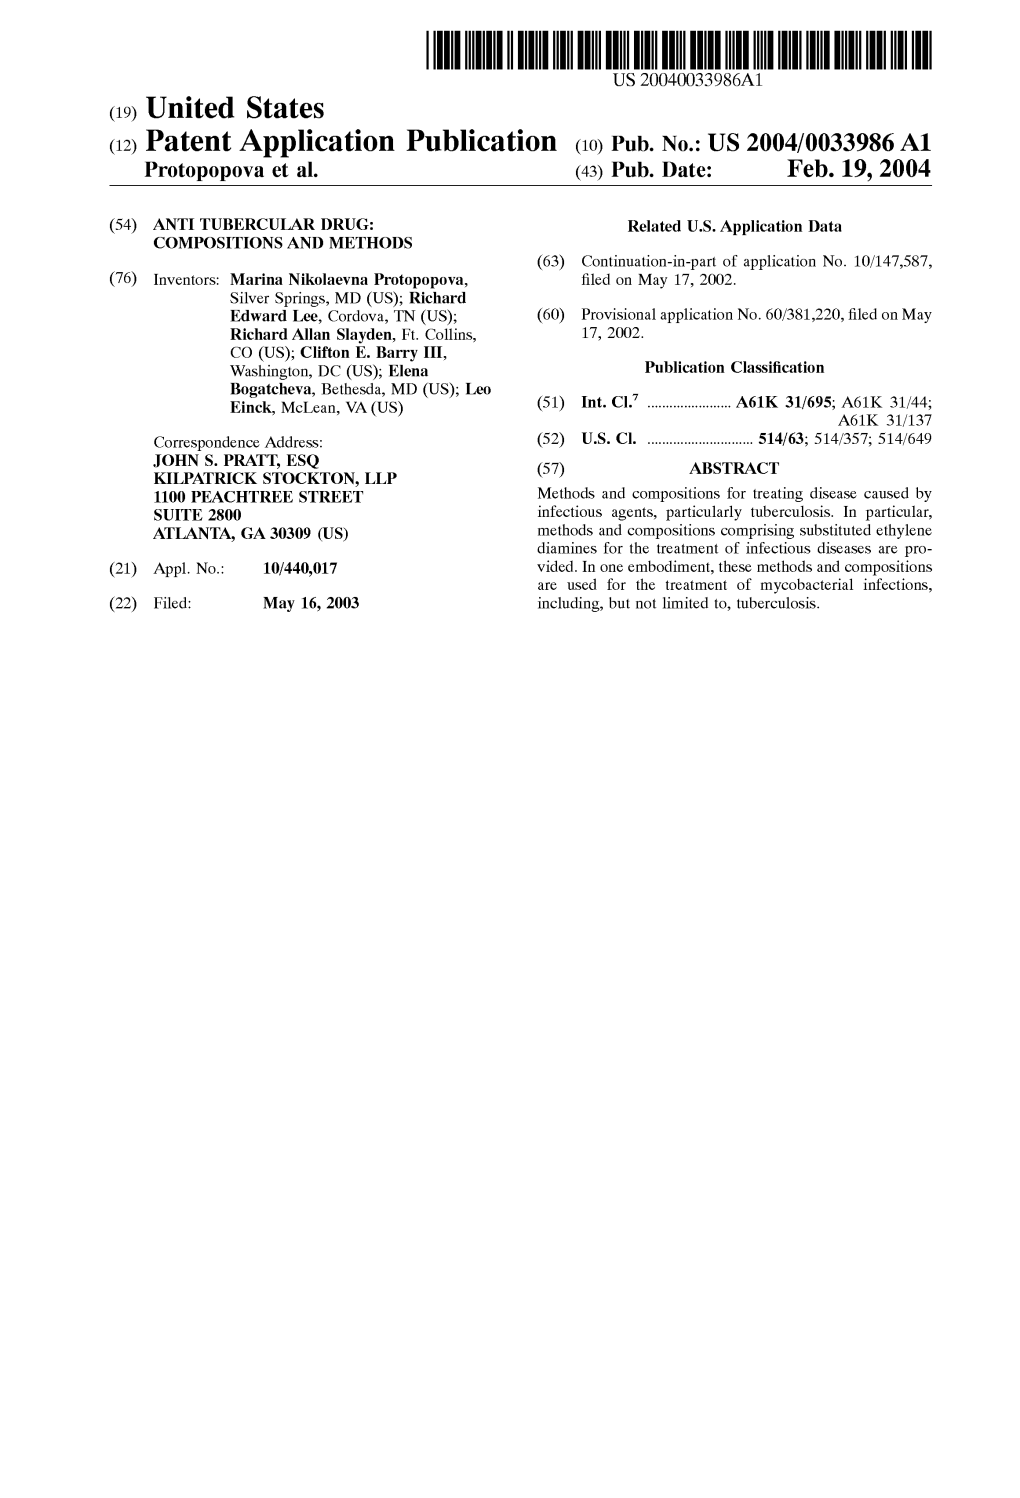 (12) Patent Application Publication (10) Pub. No.: US 2004/0033986 A1 Protopopova Et Al